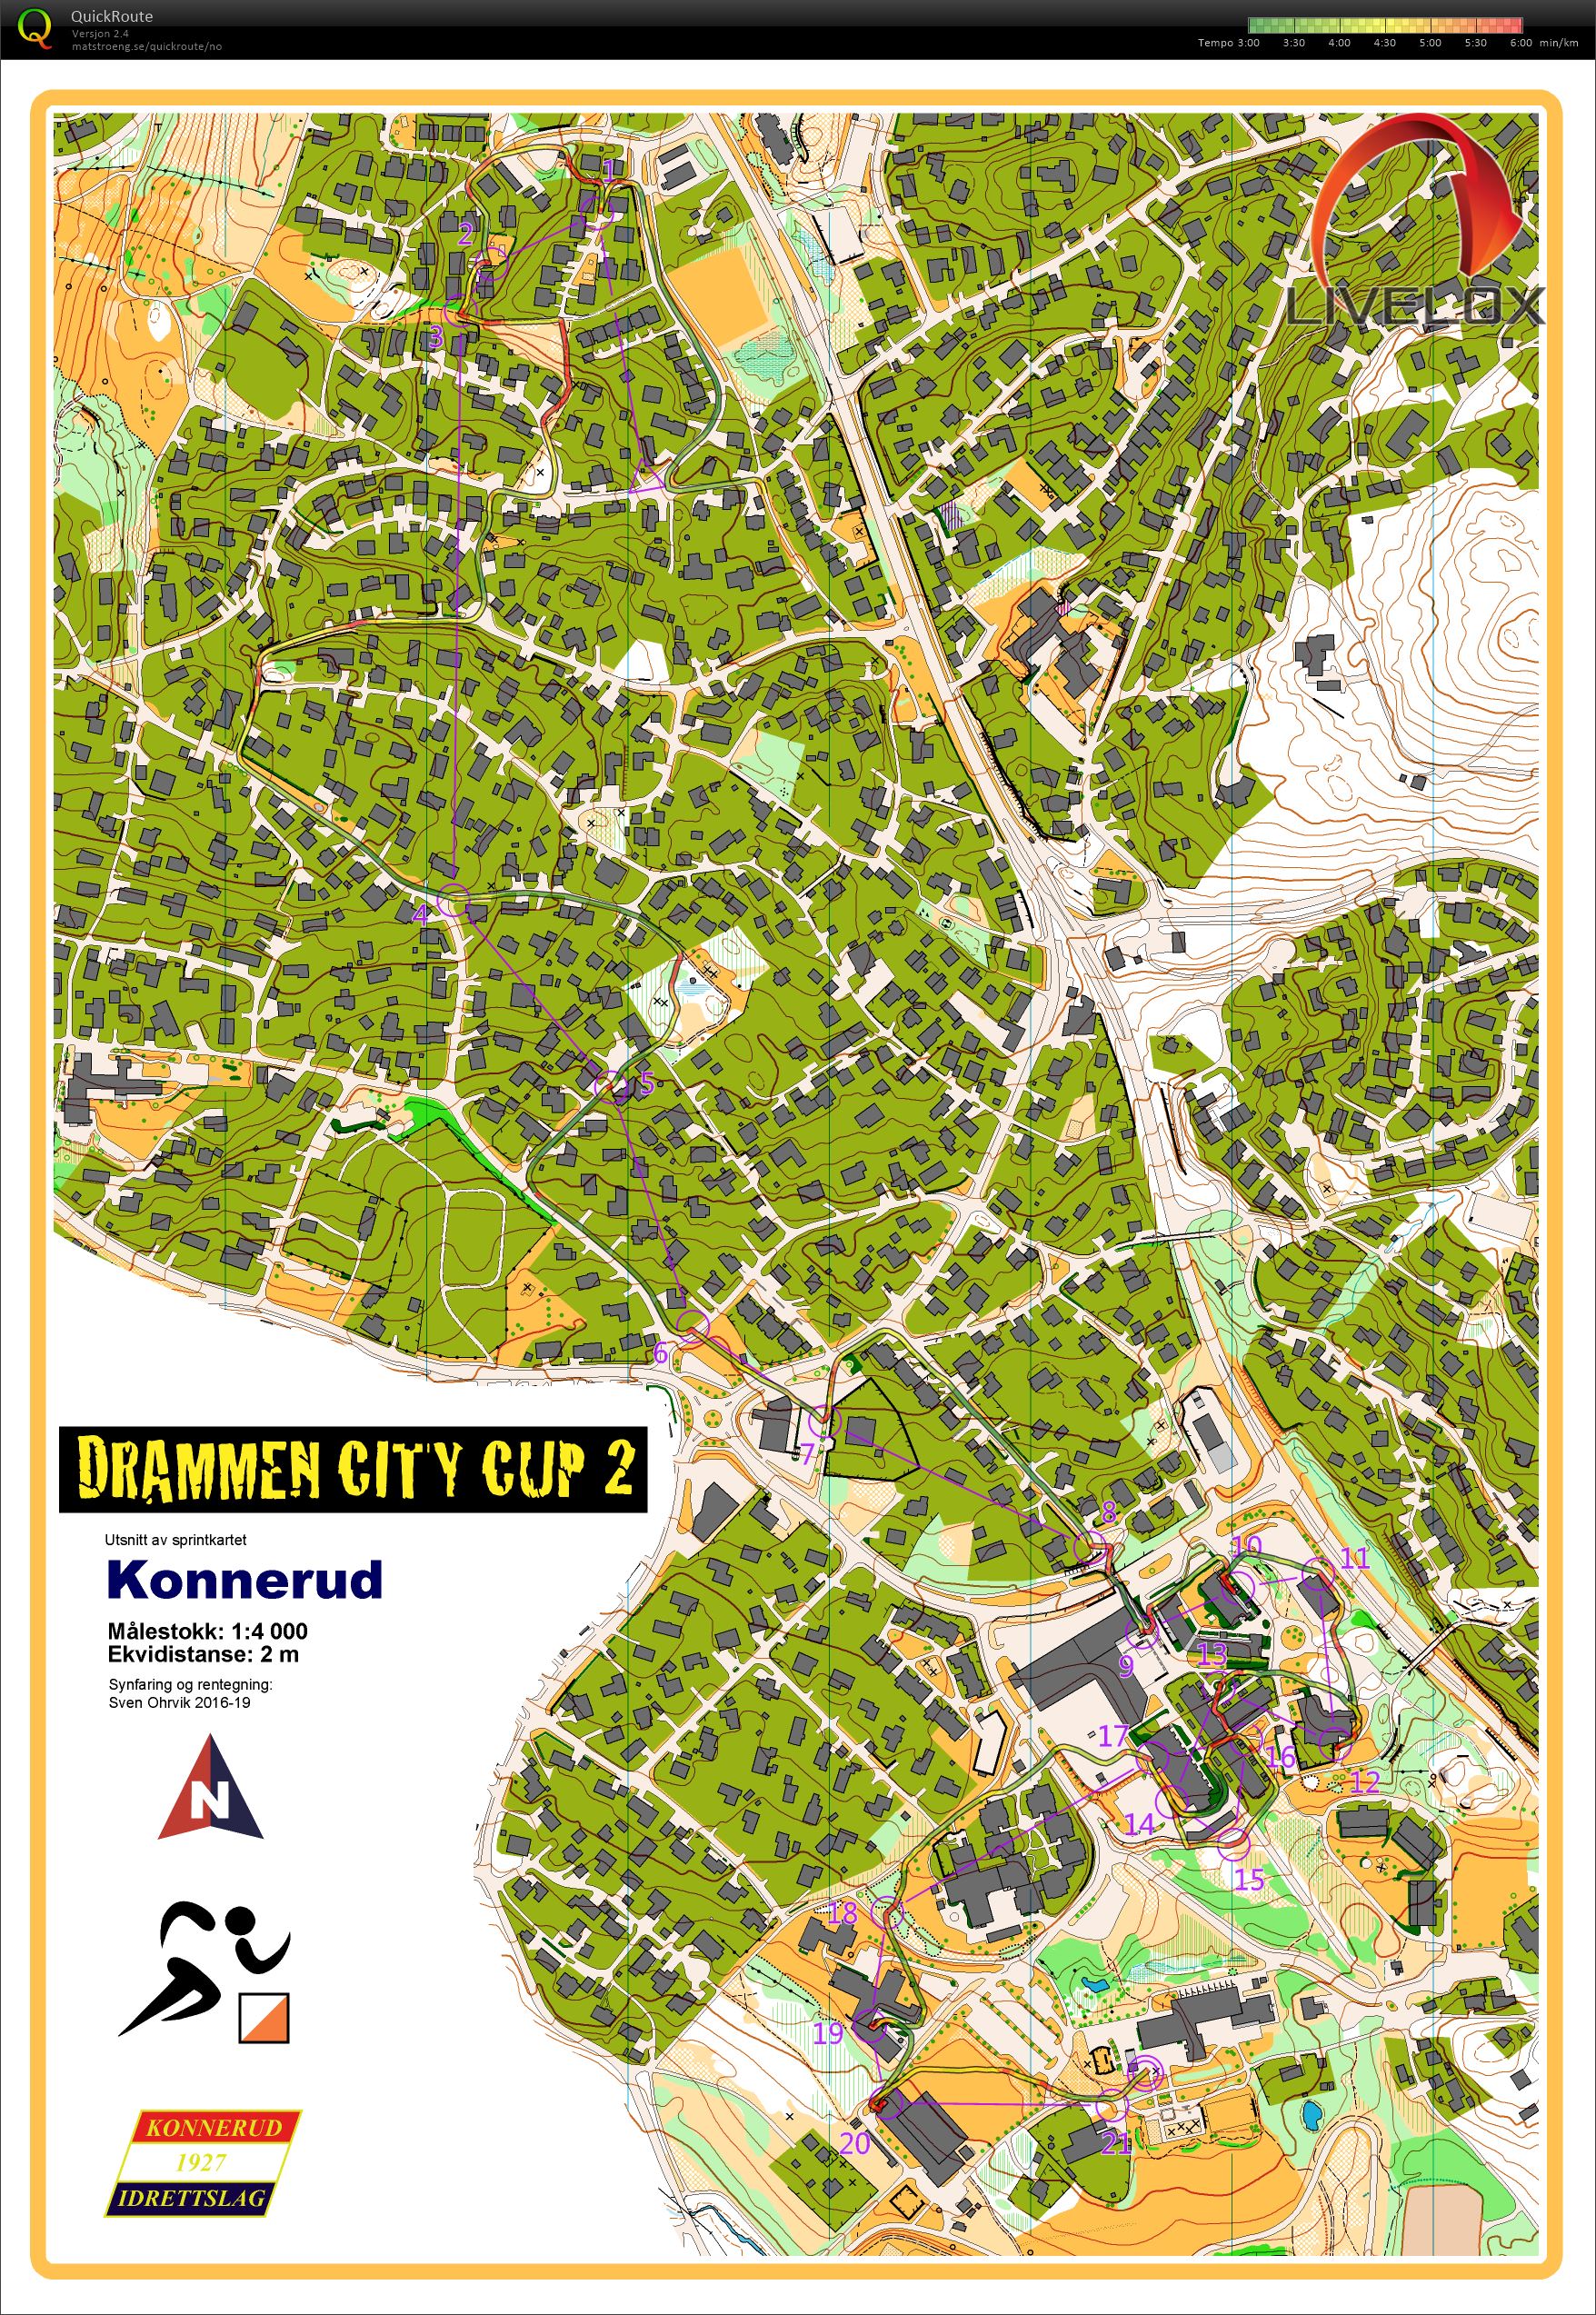 Drammen City Cup løp 2 (11.04.2019)